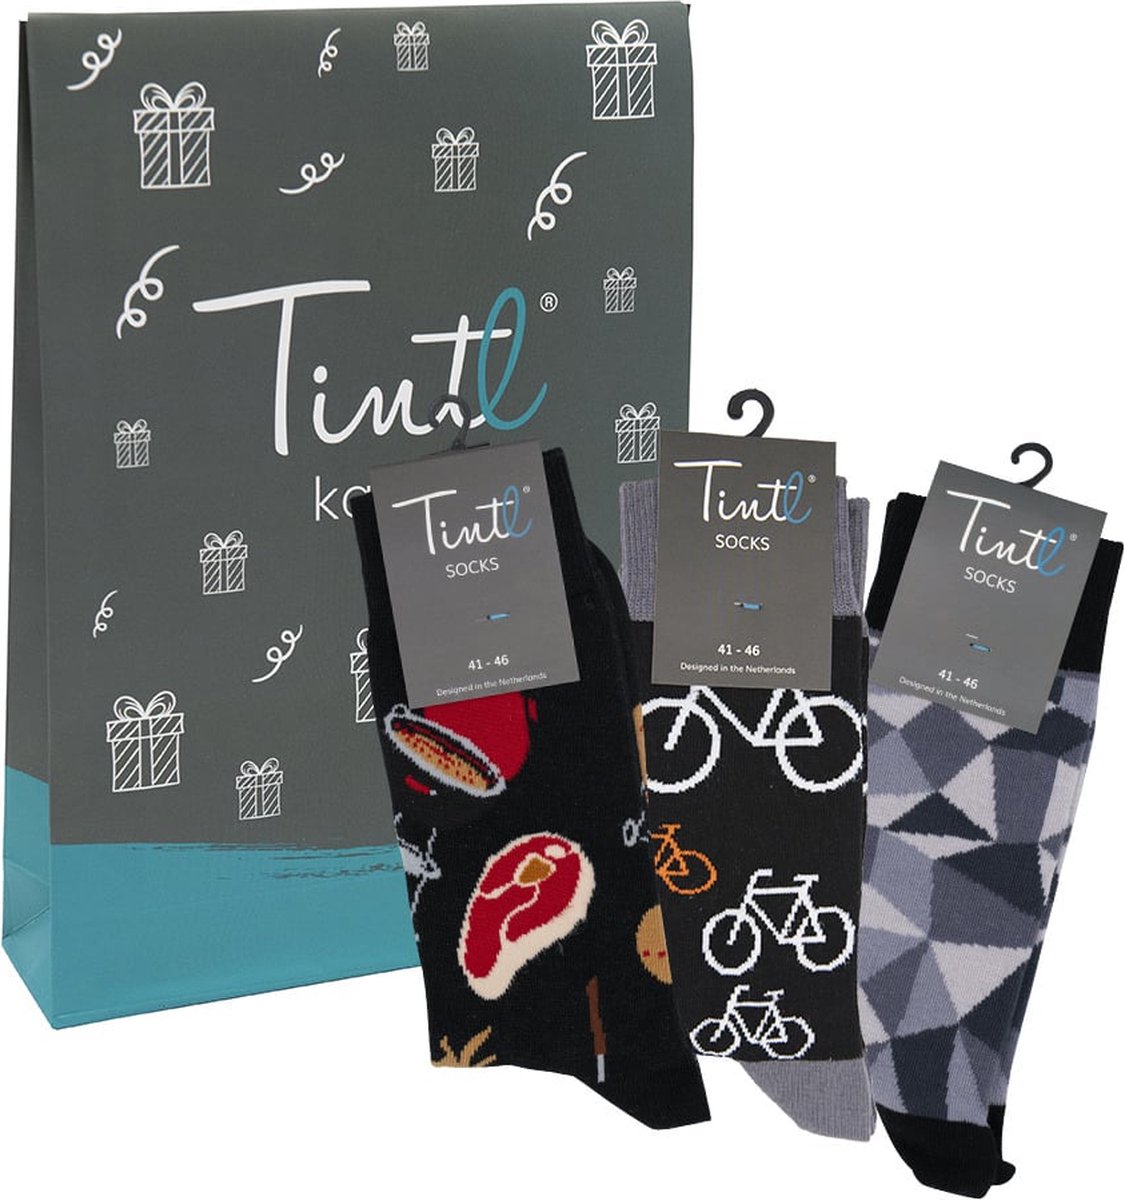 Tintl socks geschenkset unisex sokken | Trio - Black & white 2 (maat 41-46)